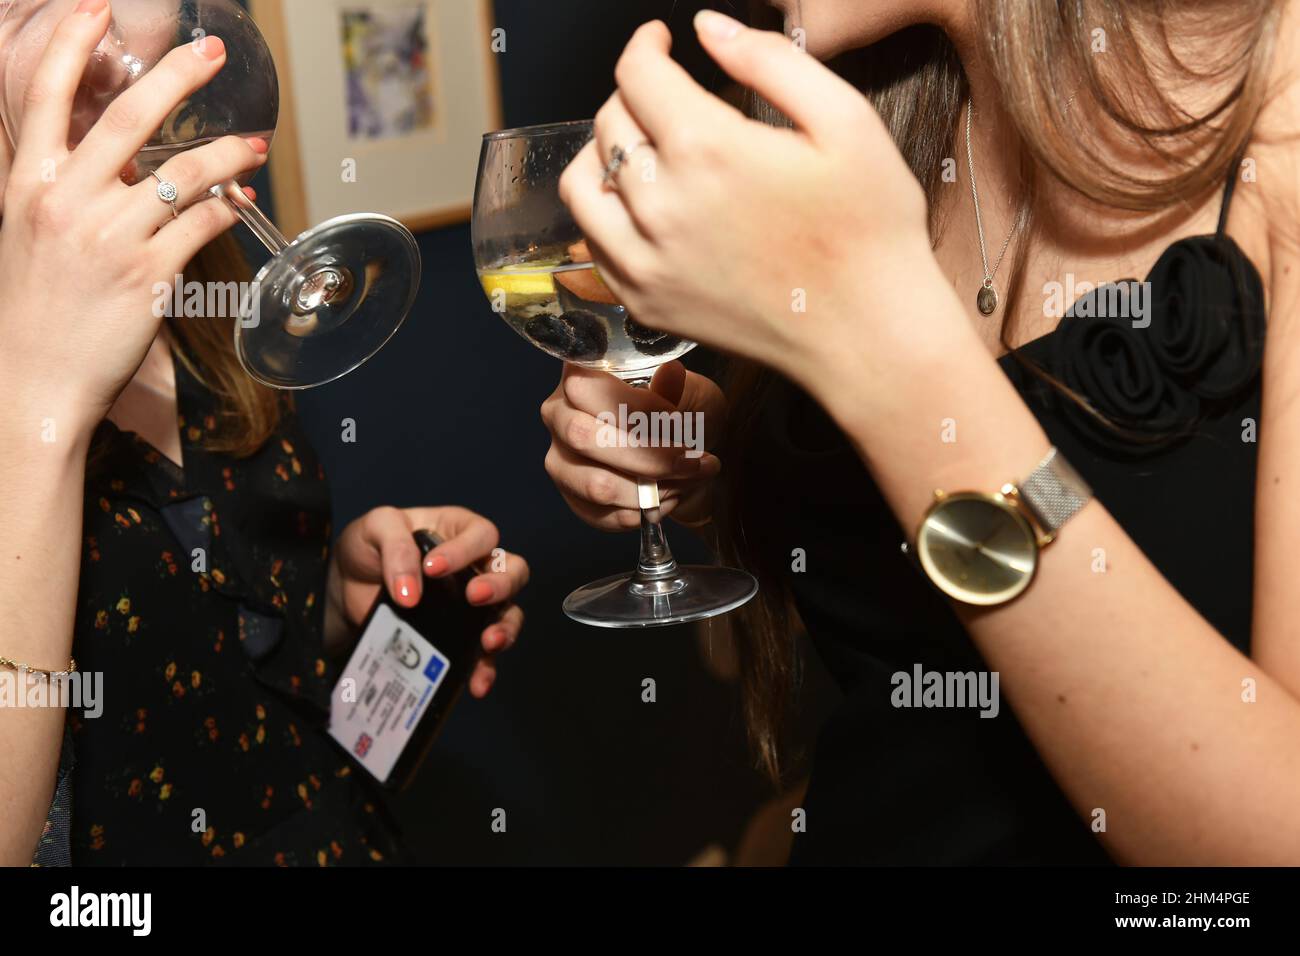 Eine junge Frau trinkt abends Gin mit Alterskennung Stockfoto